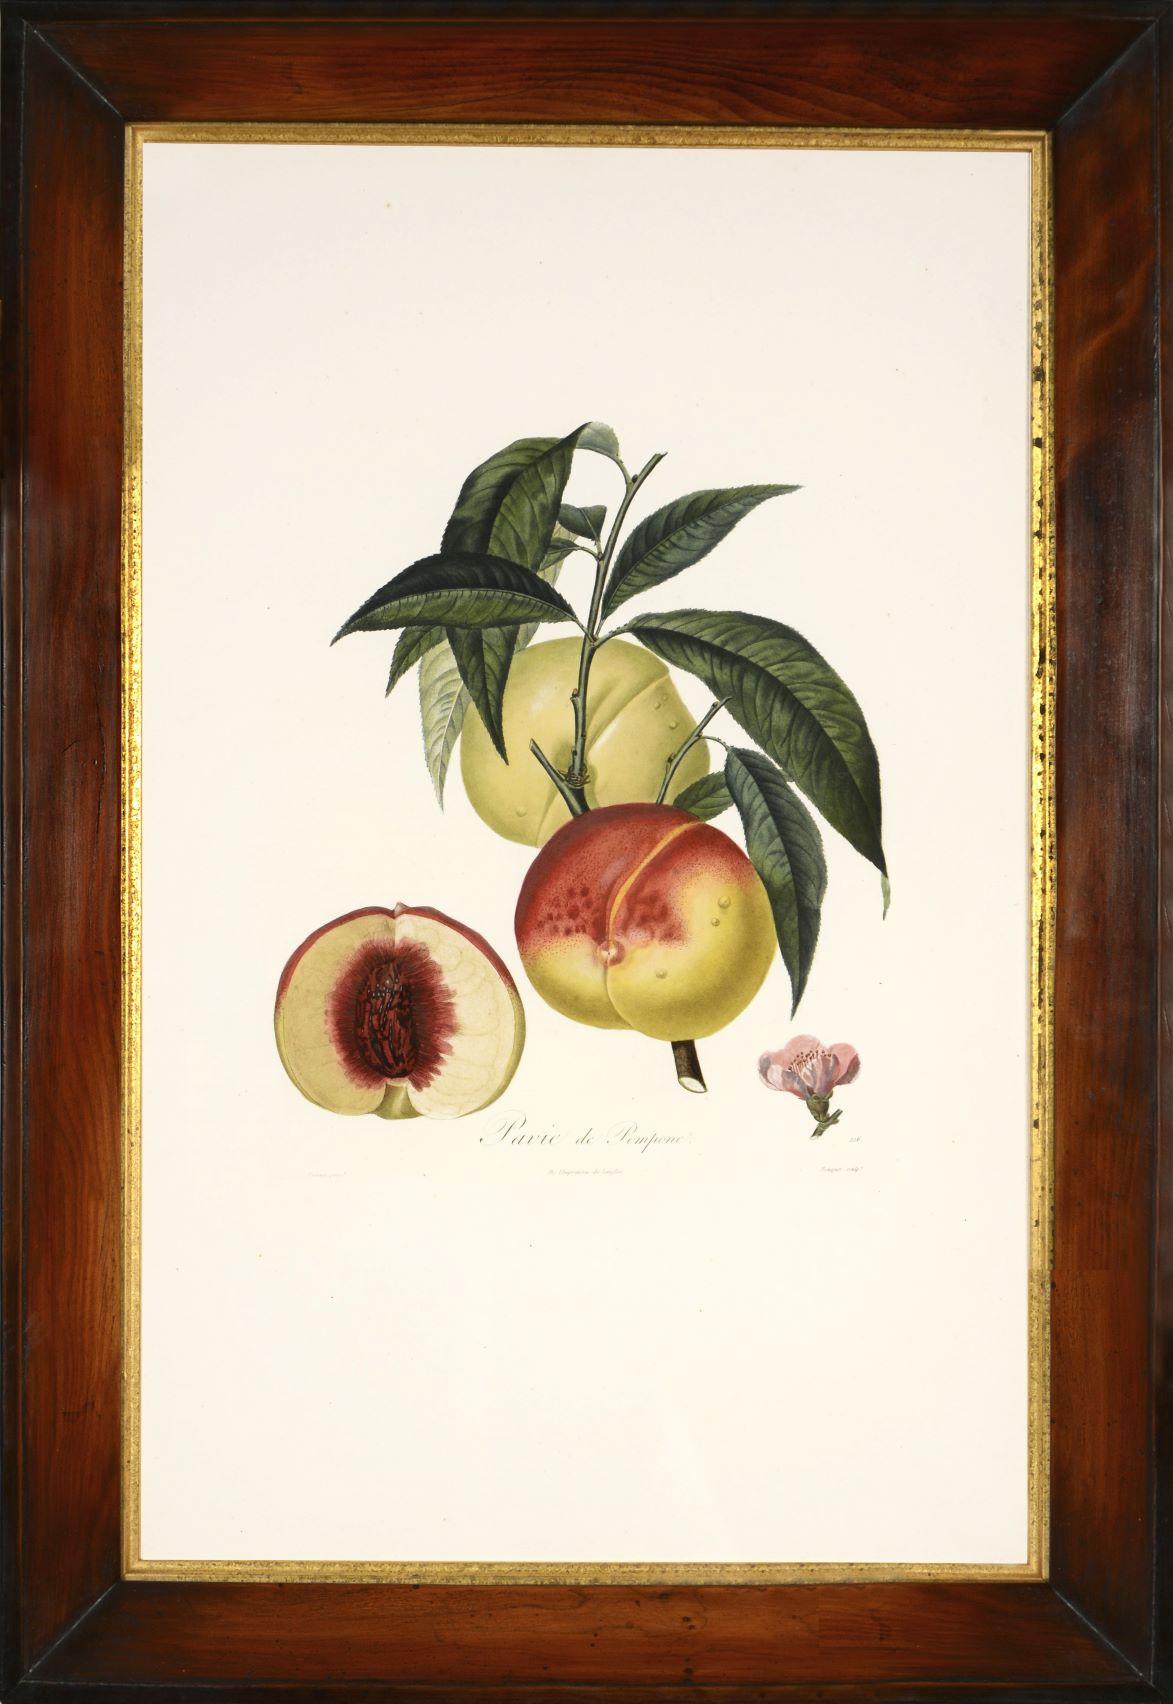 POITEAU/TURPIN. Traité des arbres fruitiers: A Set of Four Peaches - Print by POITEAU, A. and P. TURPIN.   